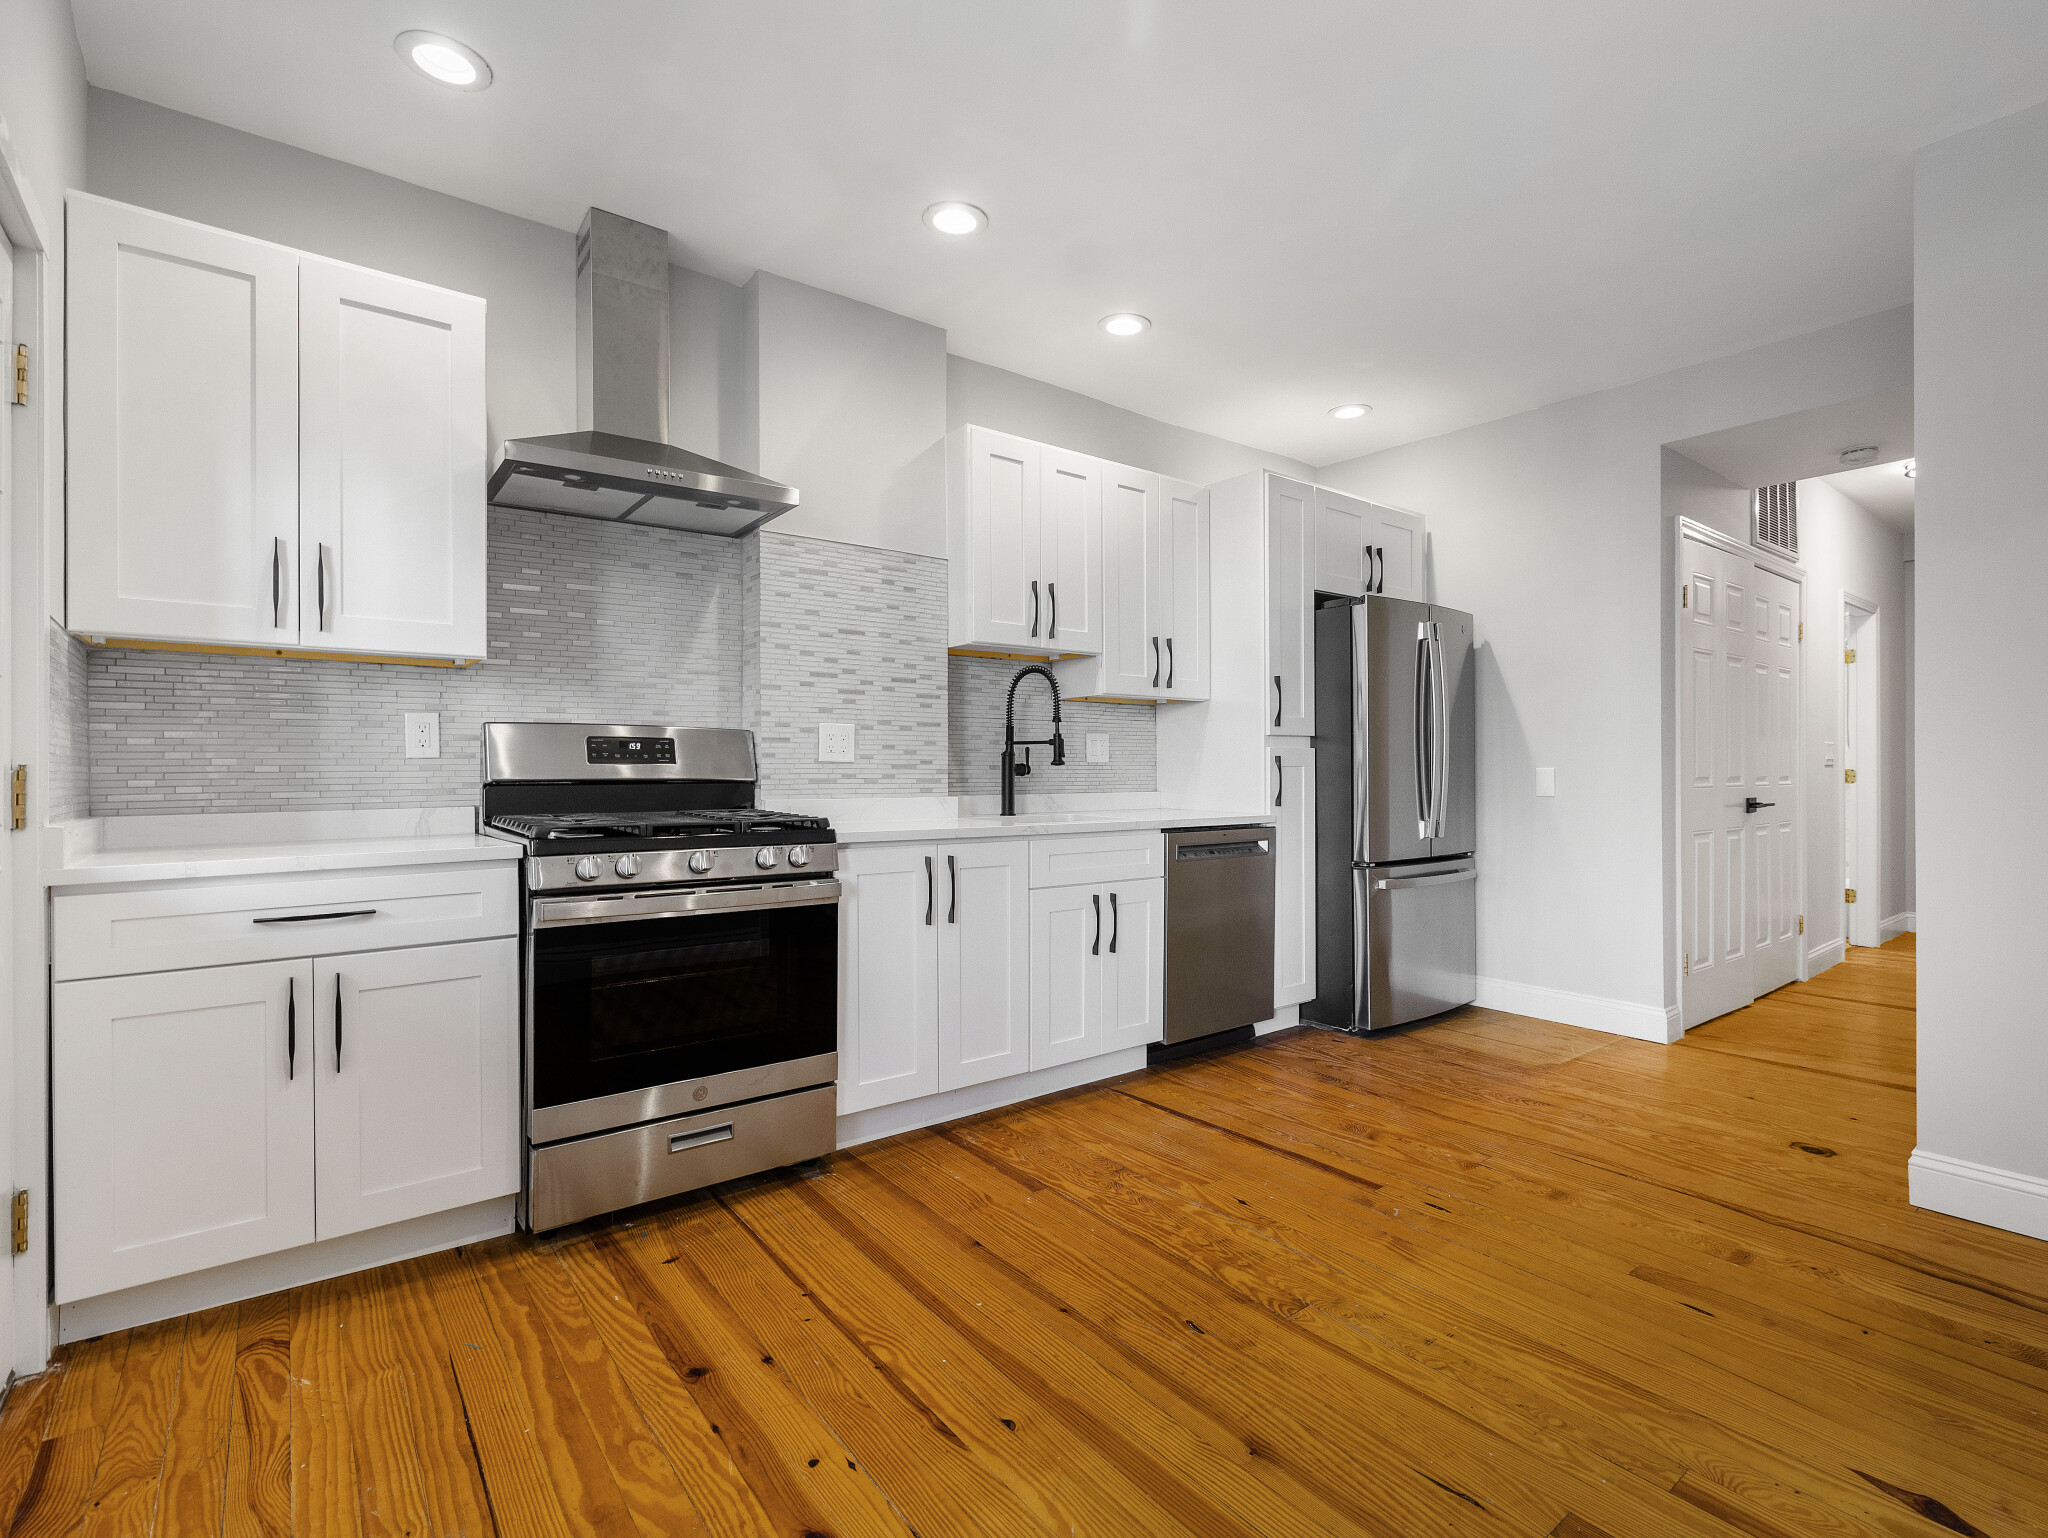 Photos of apartment on Falcon,Boston MA 02128